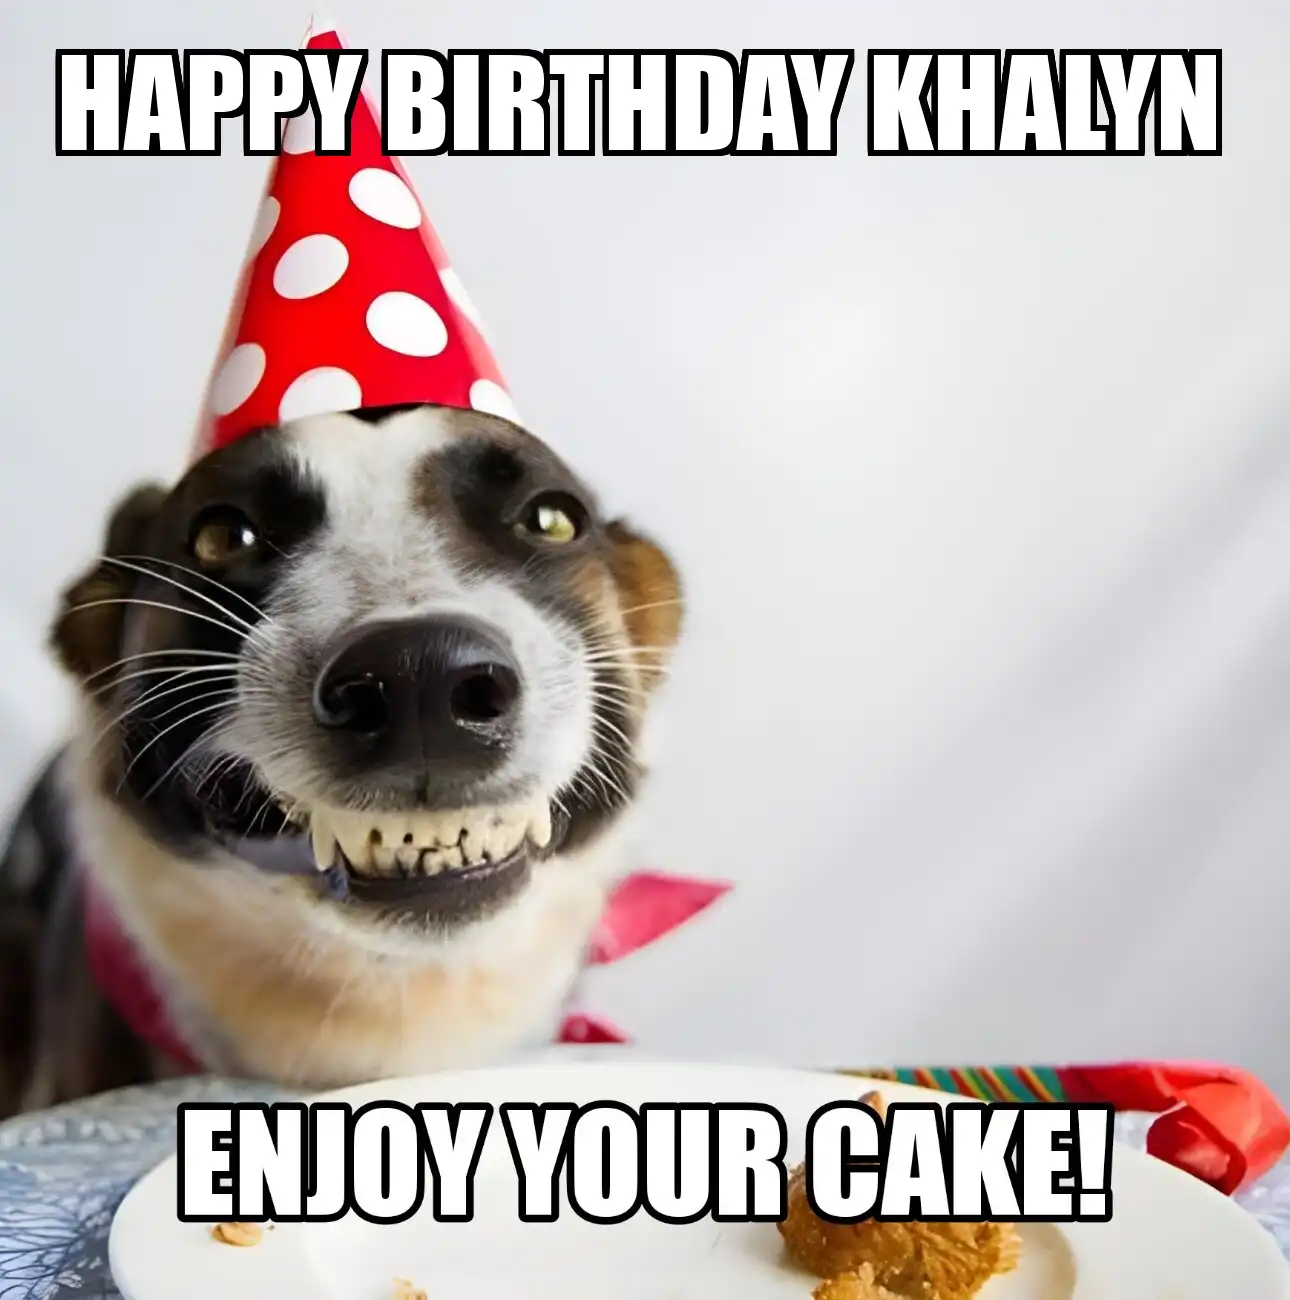 Happy Birthday Khalyn Enjoy Your Cake Dog Meme